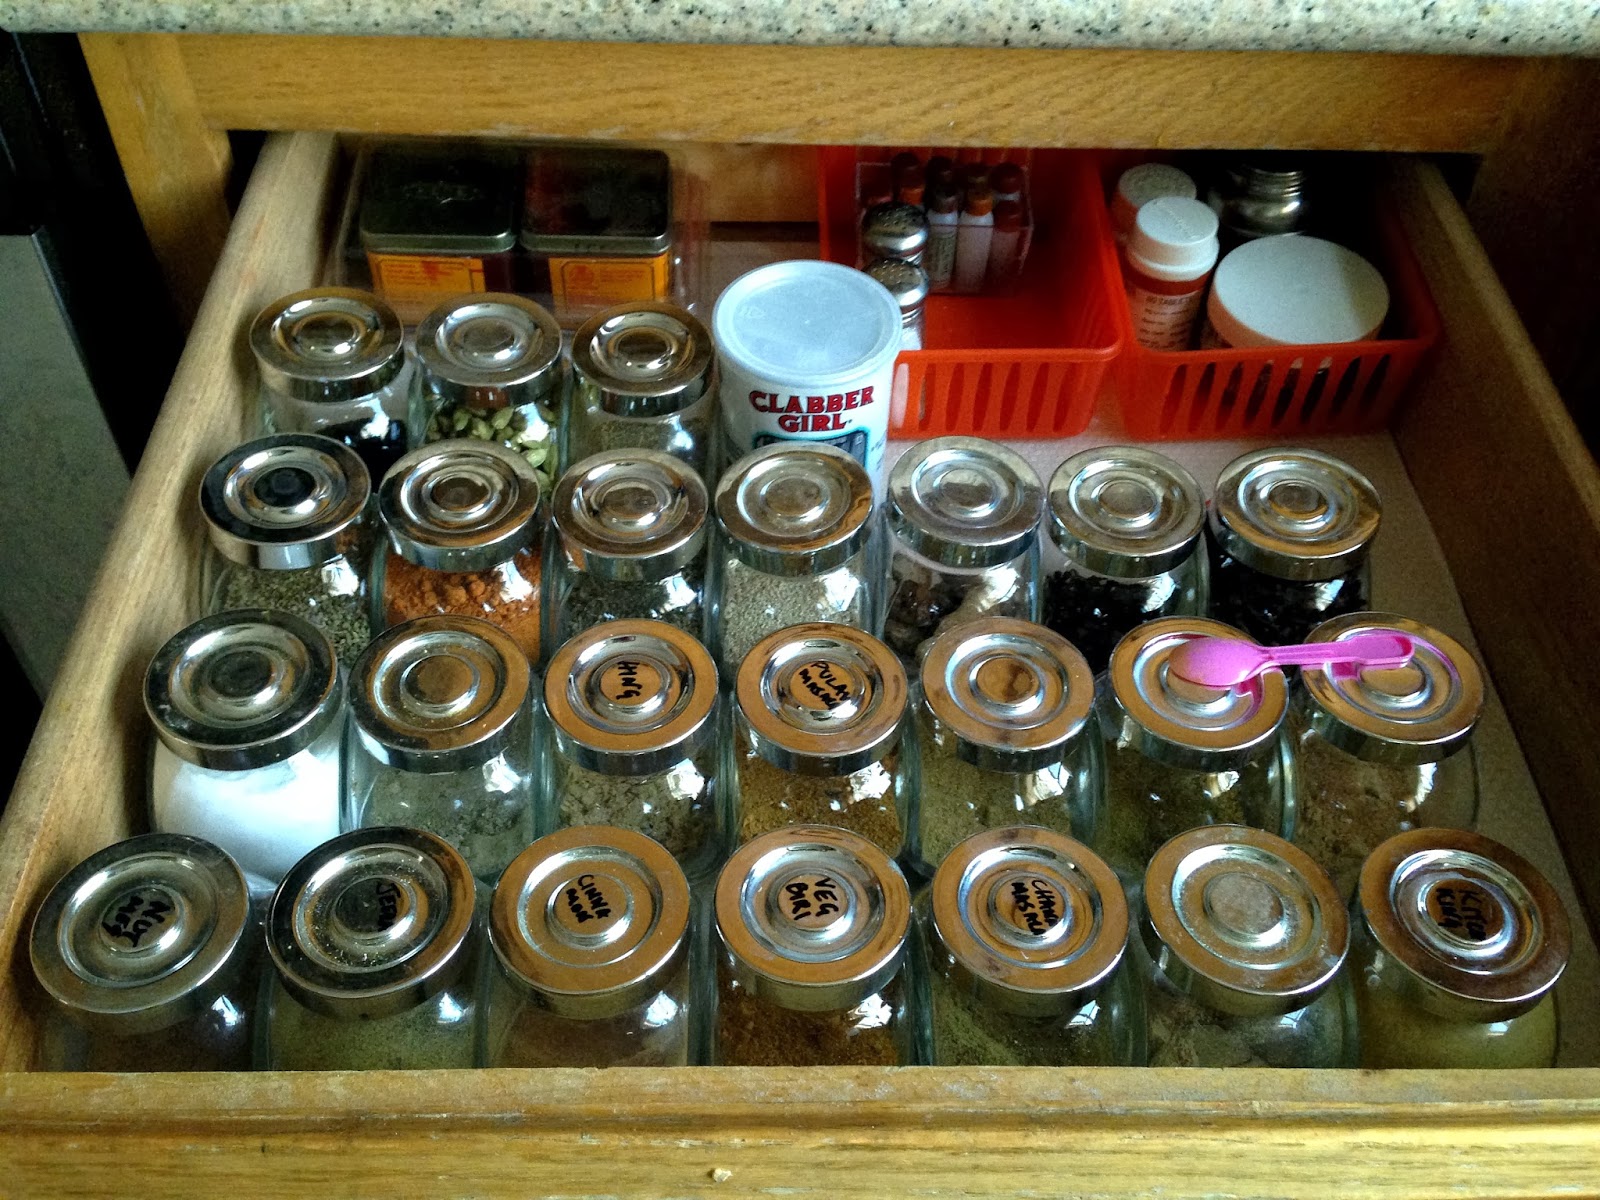 Weekend Tweaks Spice Jars In Kitchen Drawer